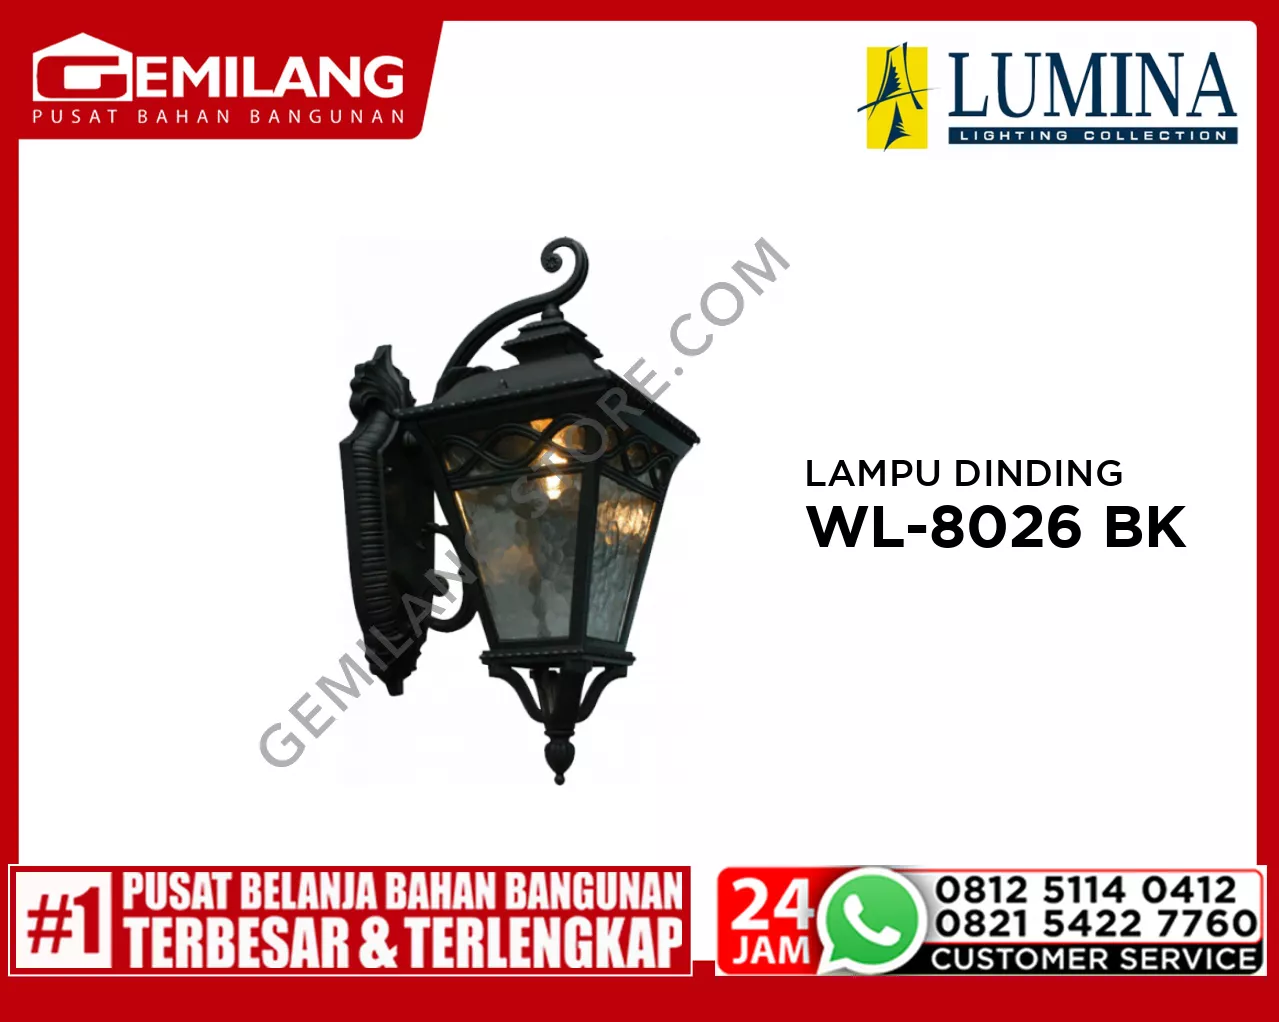 LAMPU DINDING WL-8026 BK